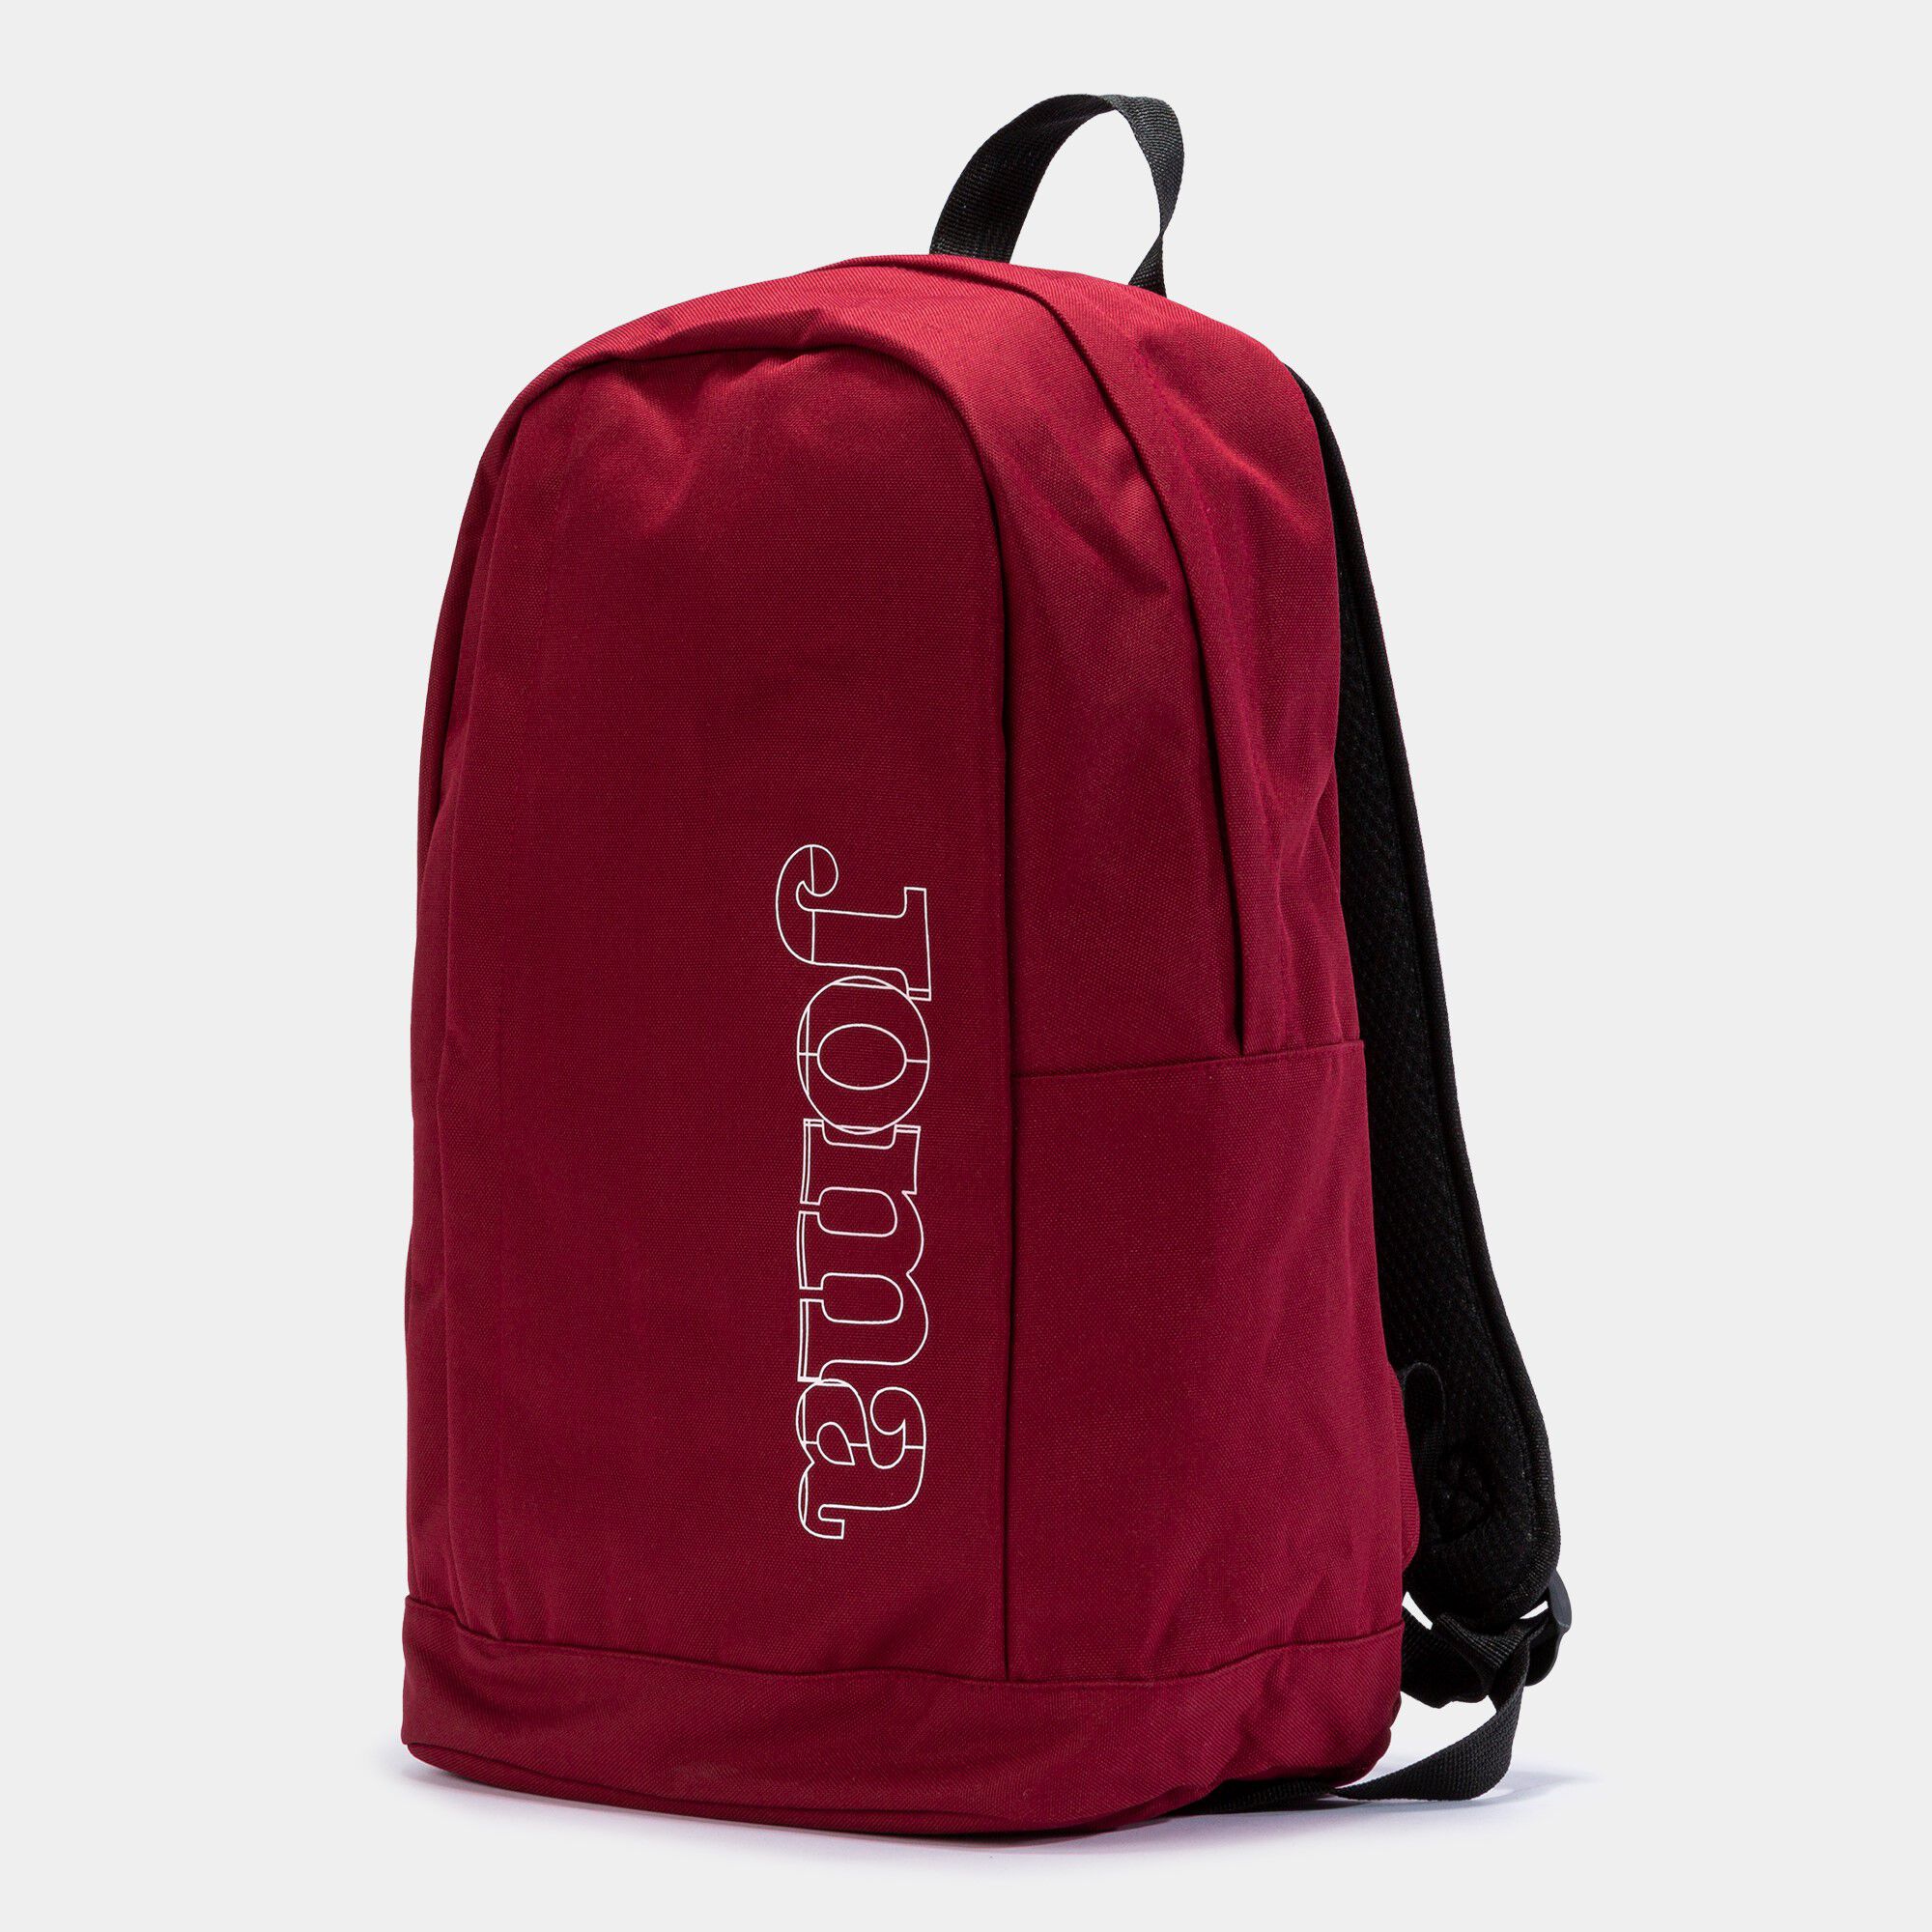 Backpack - shoe bag Beta burgundy